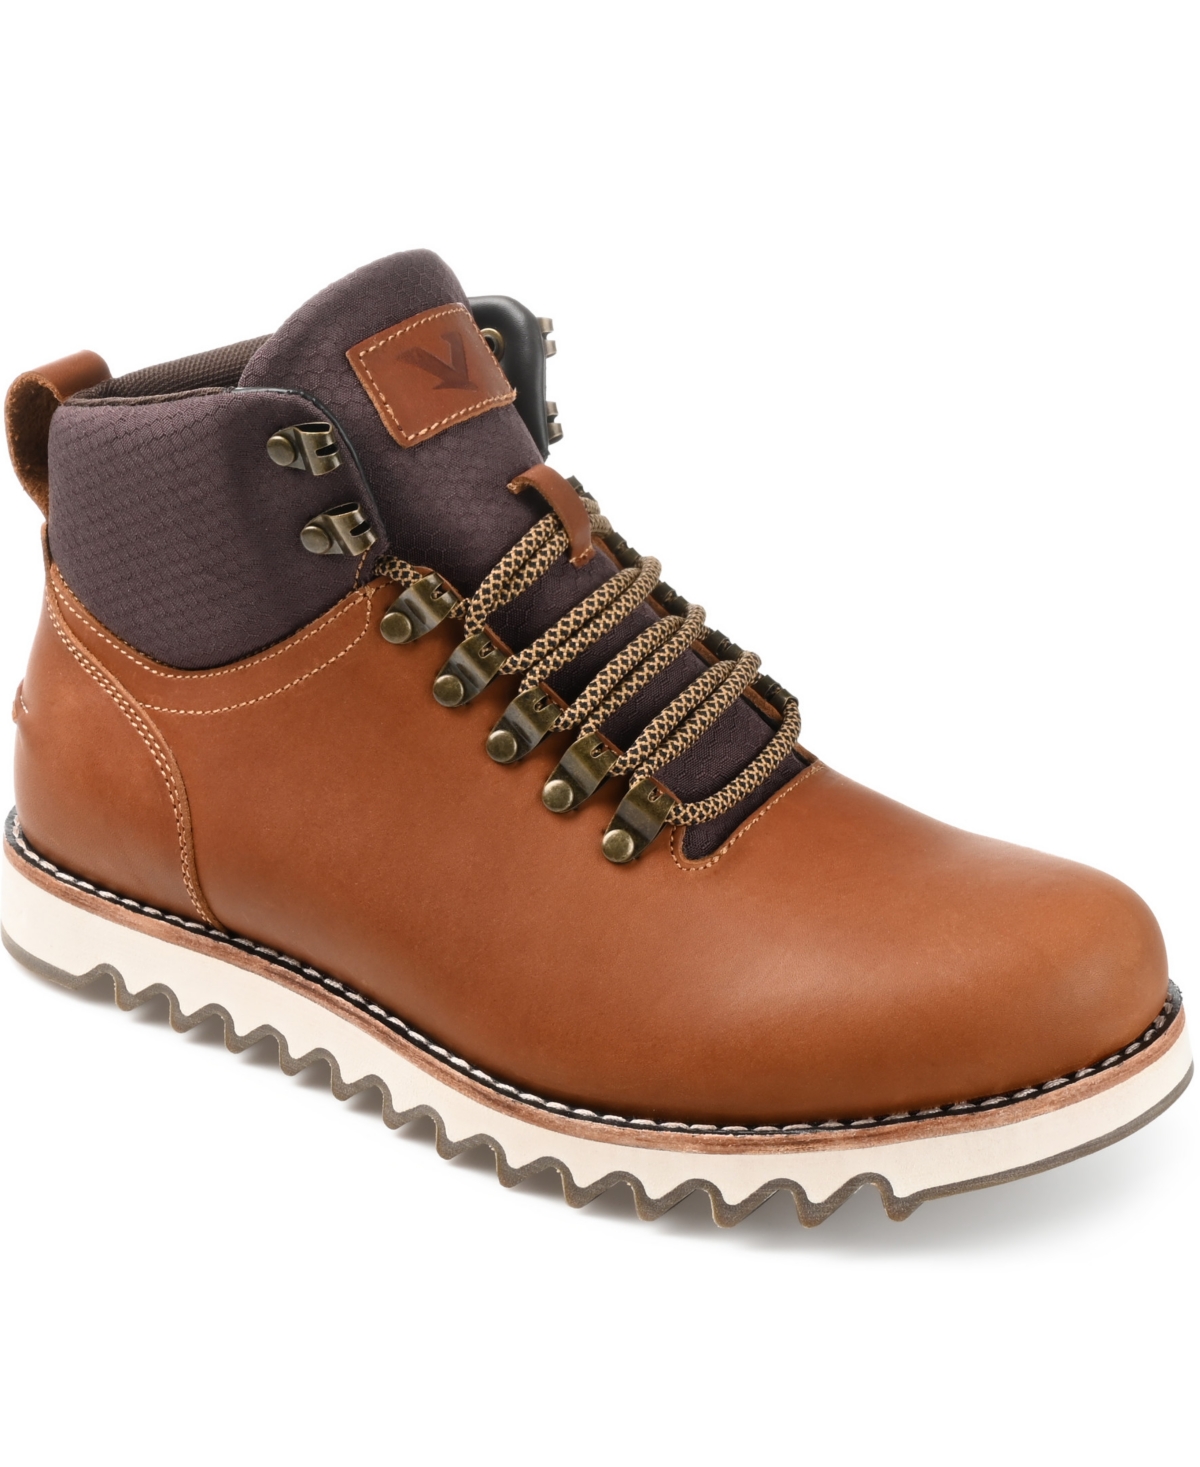 Men's Crash Ankle Boots - Brown